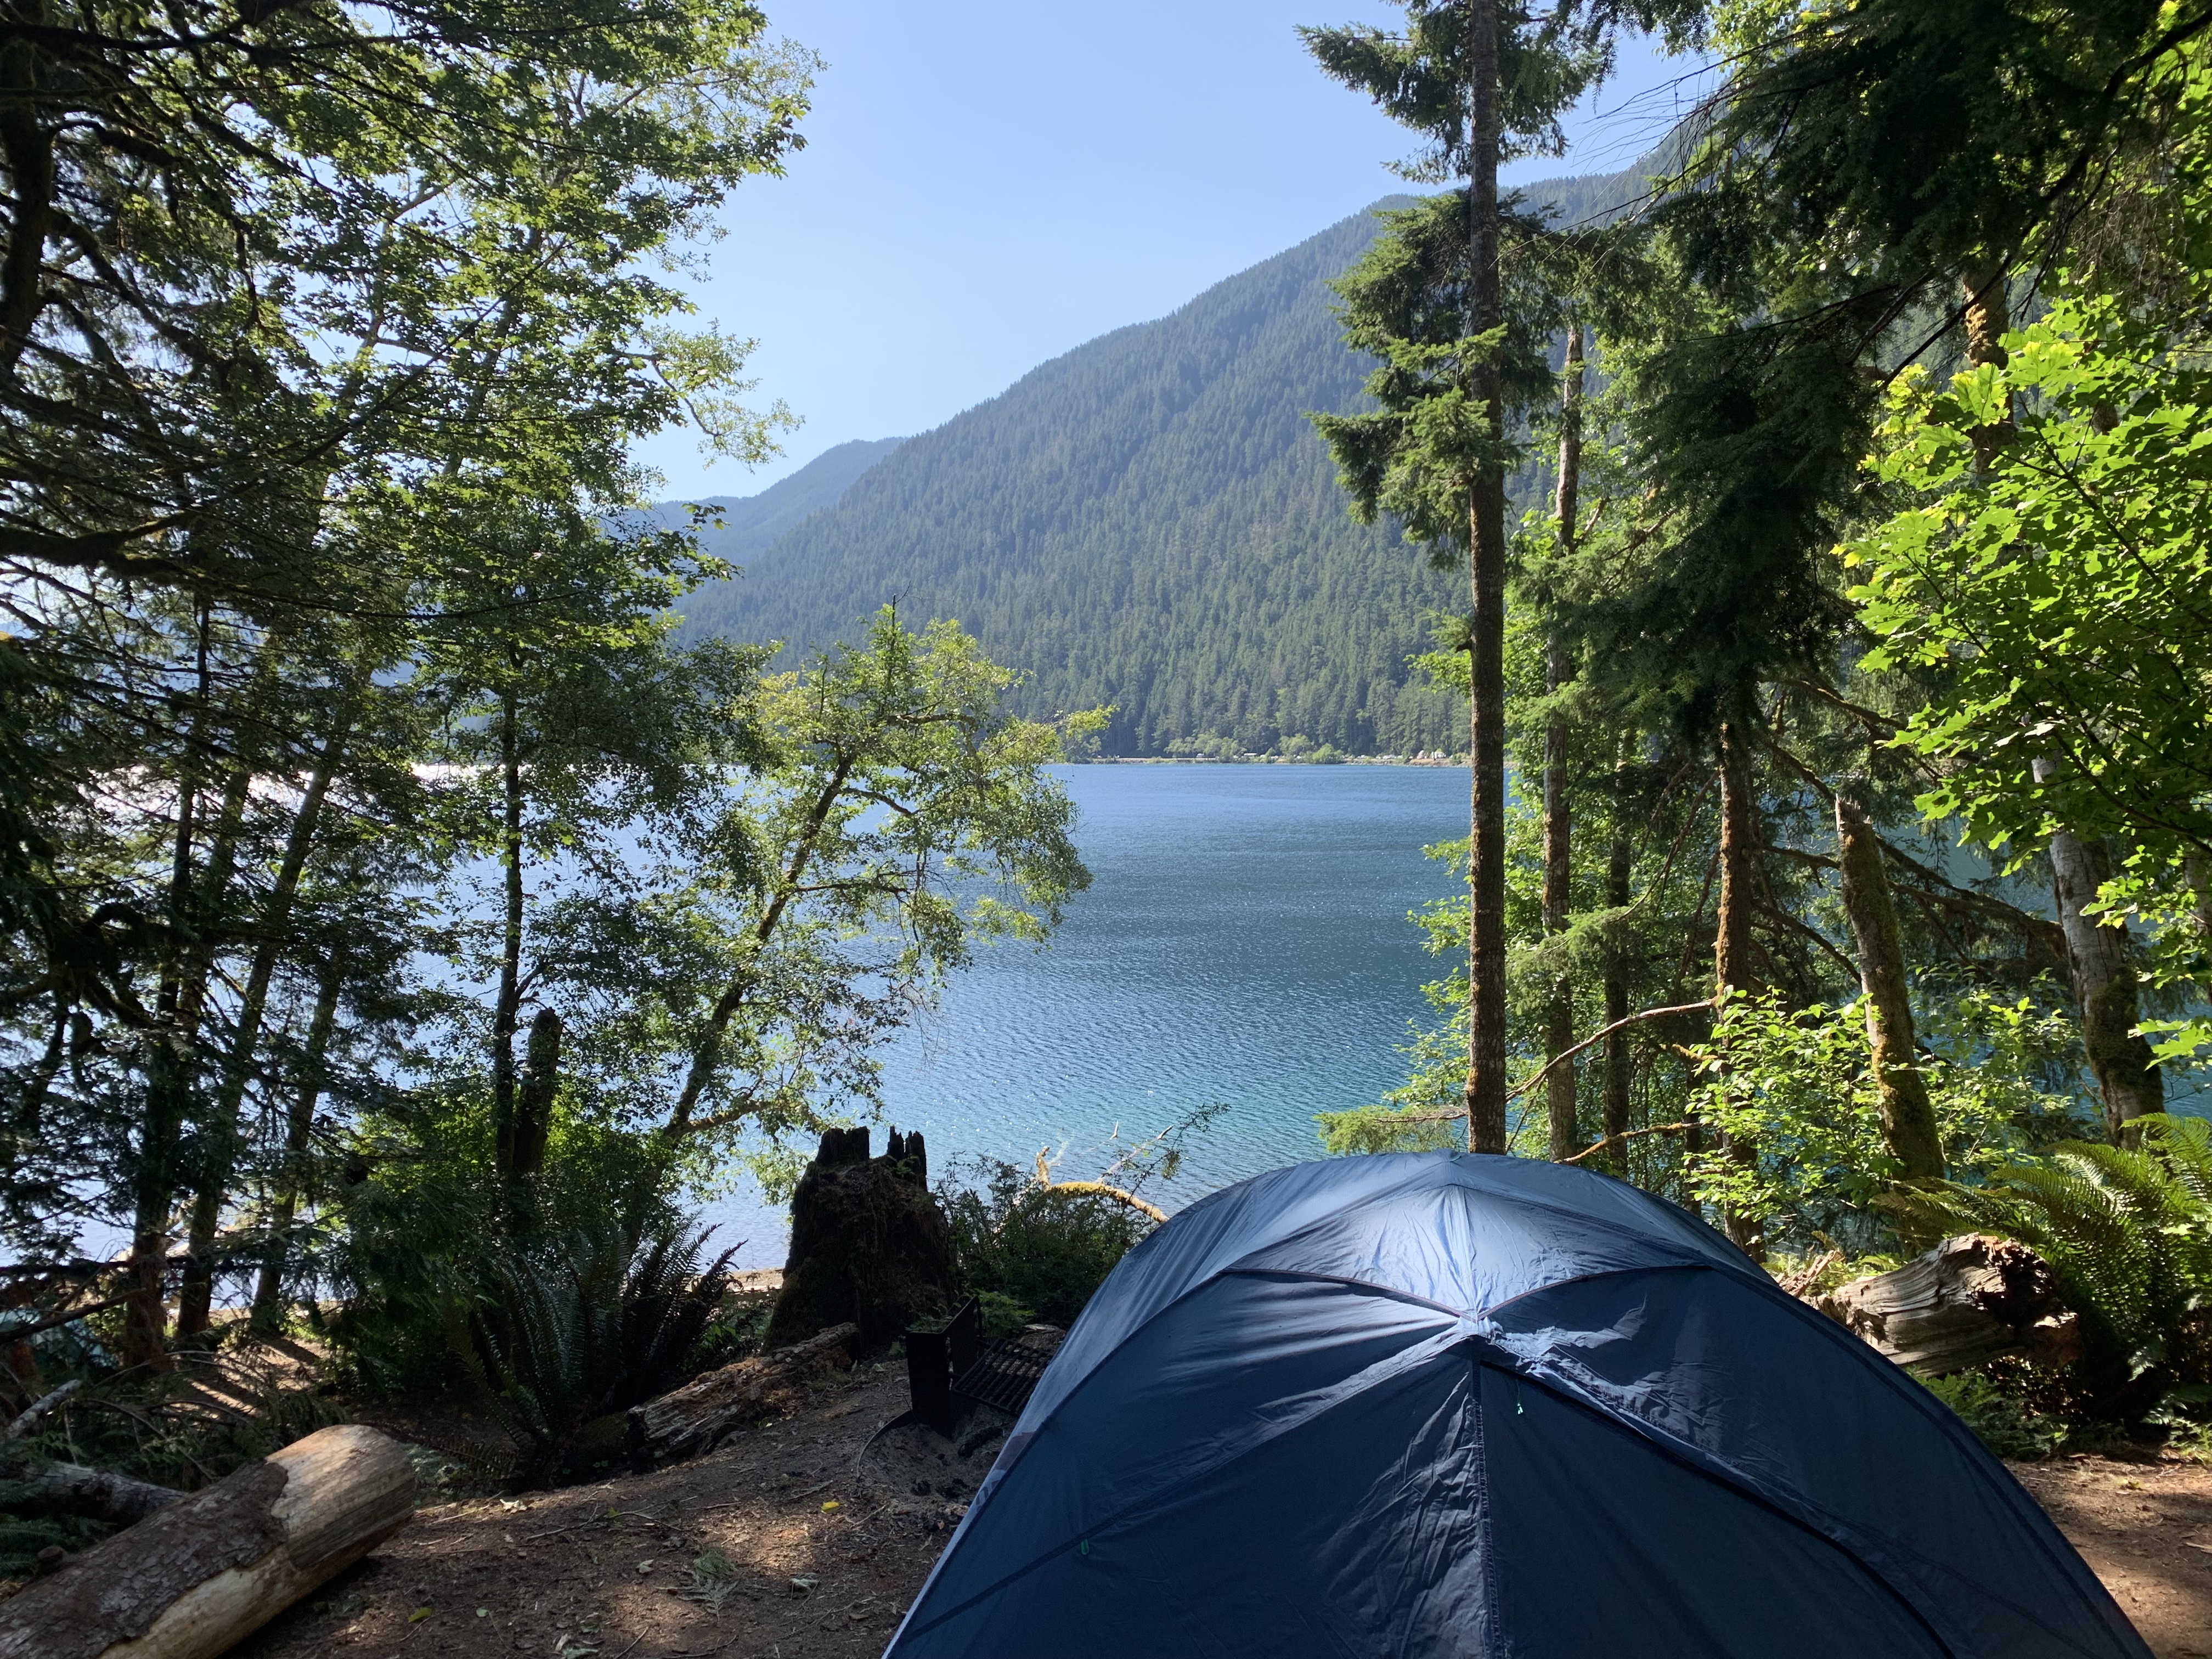 Camping at Lake Crescent